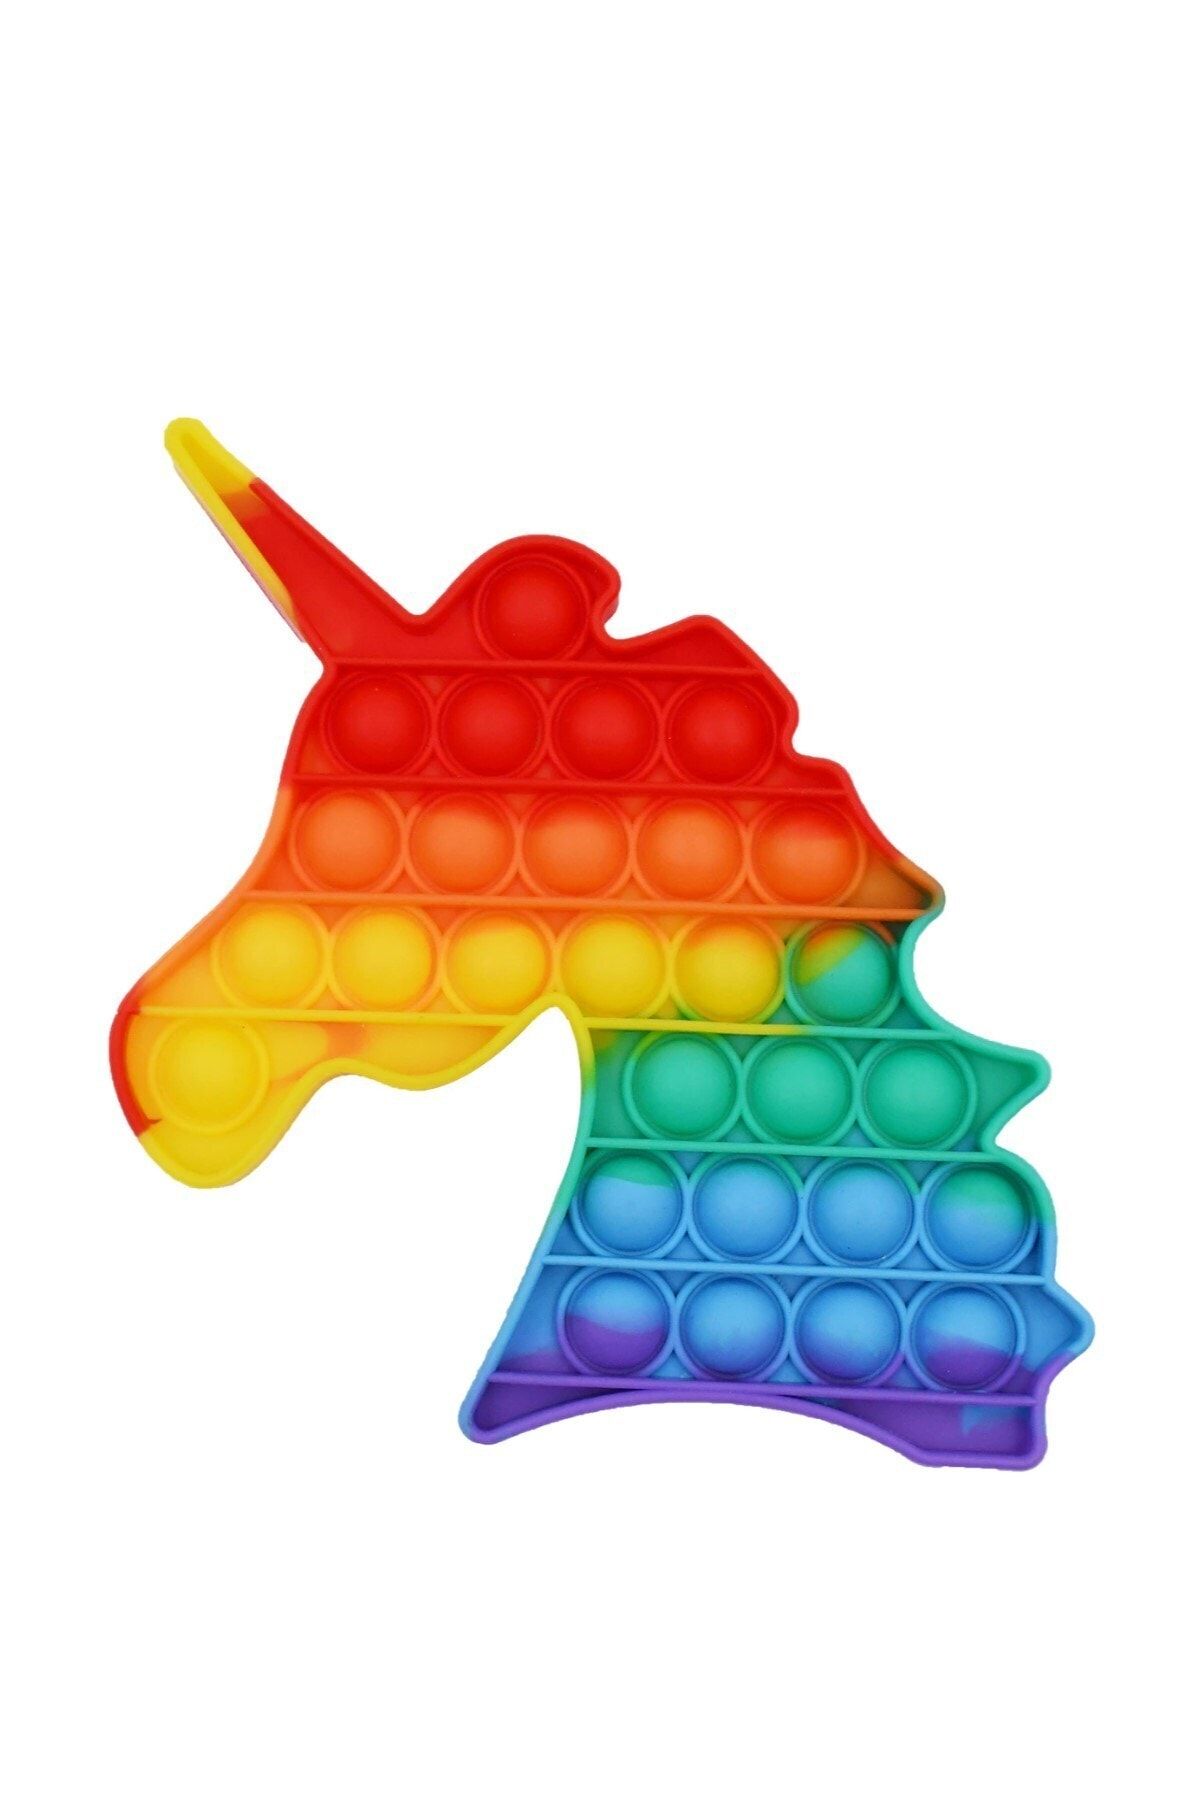 RoseRoi Özel Pop Duyusal Oyuncak Zihinsel Stres Oyunu Popit Gökkuşağı  Unicorn Fiyatı, Yorumları - Trendyol